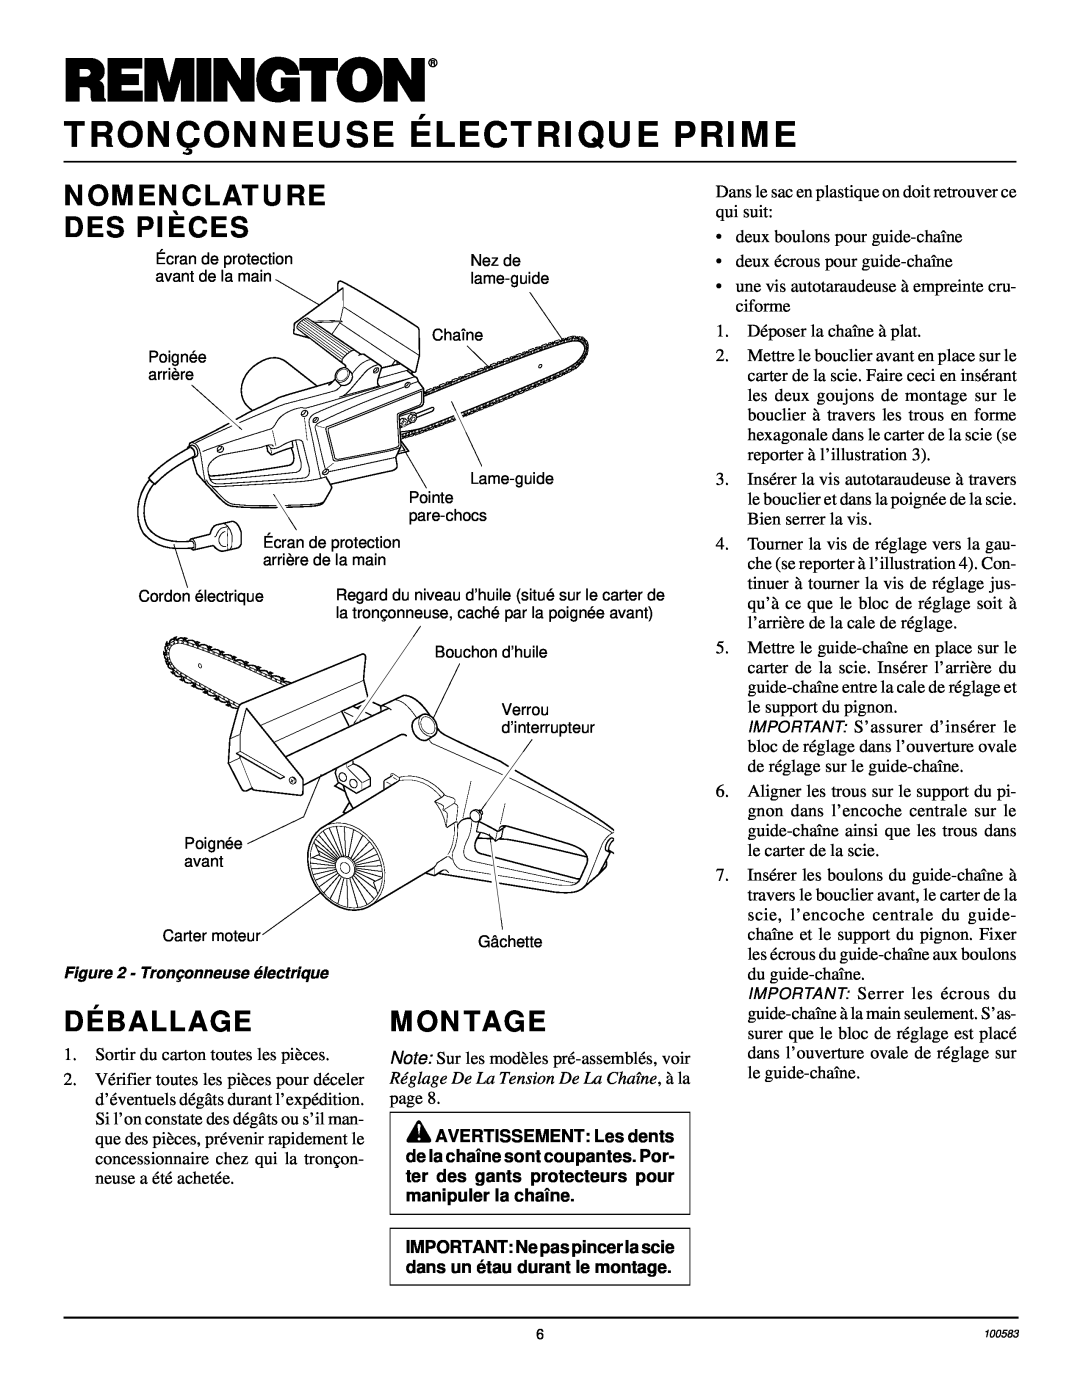 Remington EL-7 14-inch, LNT-2 8-inch owner manual Nomenclature Des Pièces, Déballage, Montage, Tronçonneuse Électrique Prime 